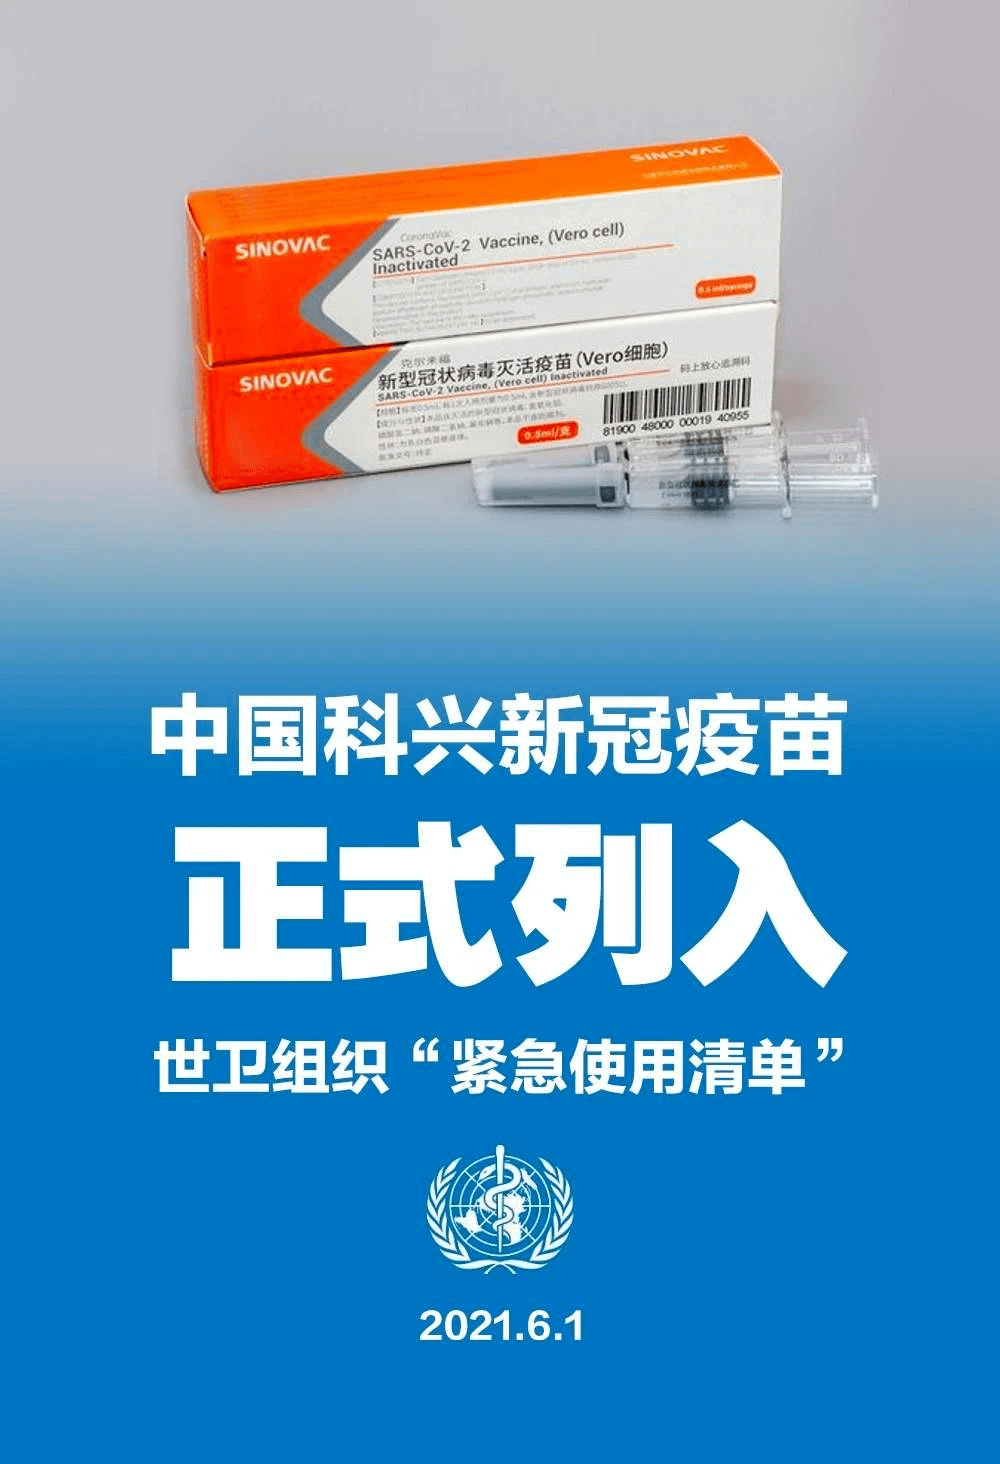 由中国北京科兴中维生物技术有限公司研发的新冠灭活疫苗克尔来福